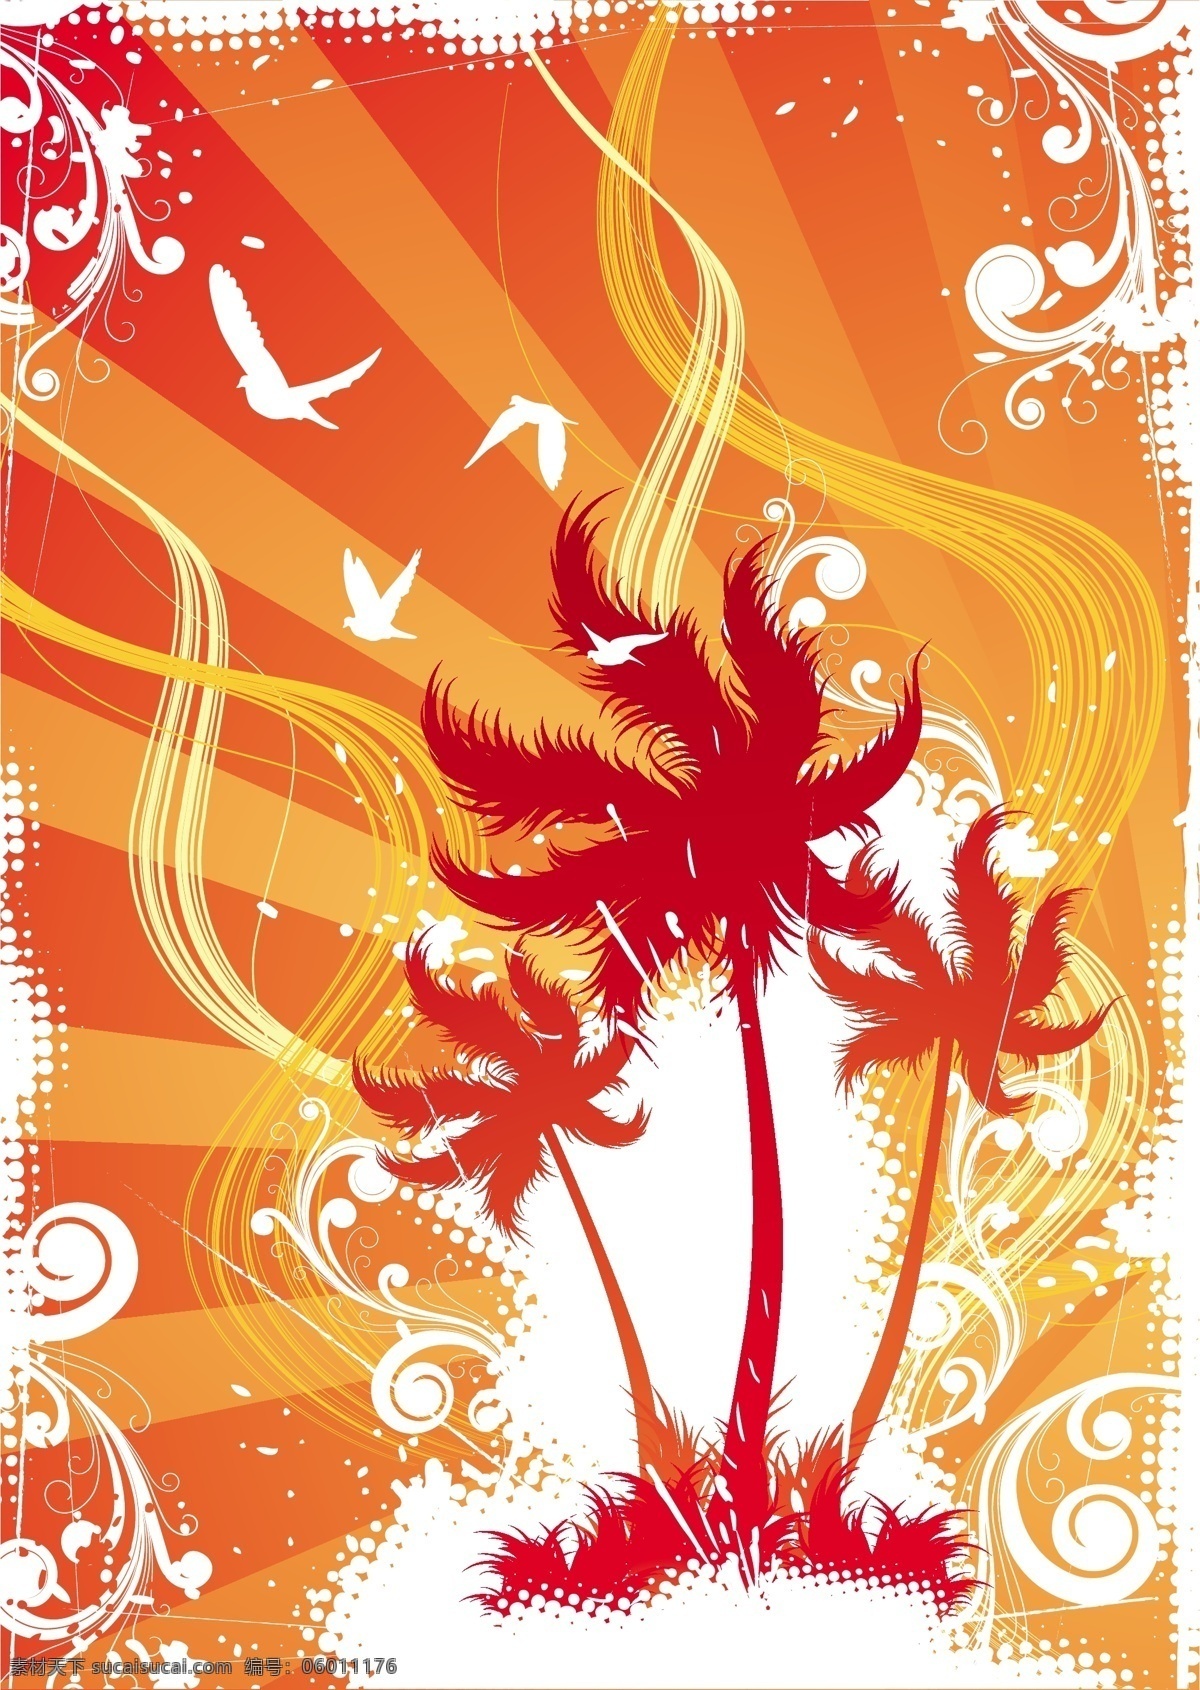 精美 椰子树 花纹 背景 海鸥 矢量素材 矢量椰子树 矢量图 花纹花边